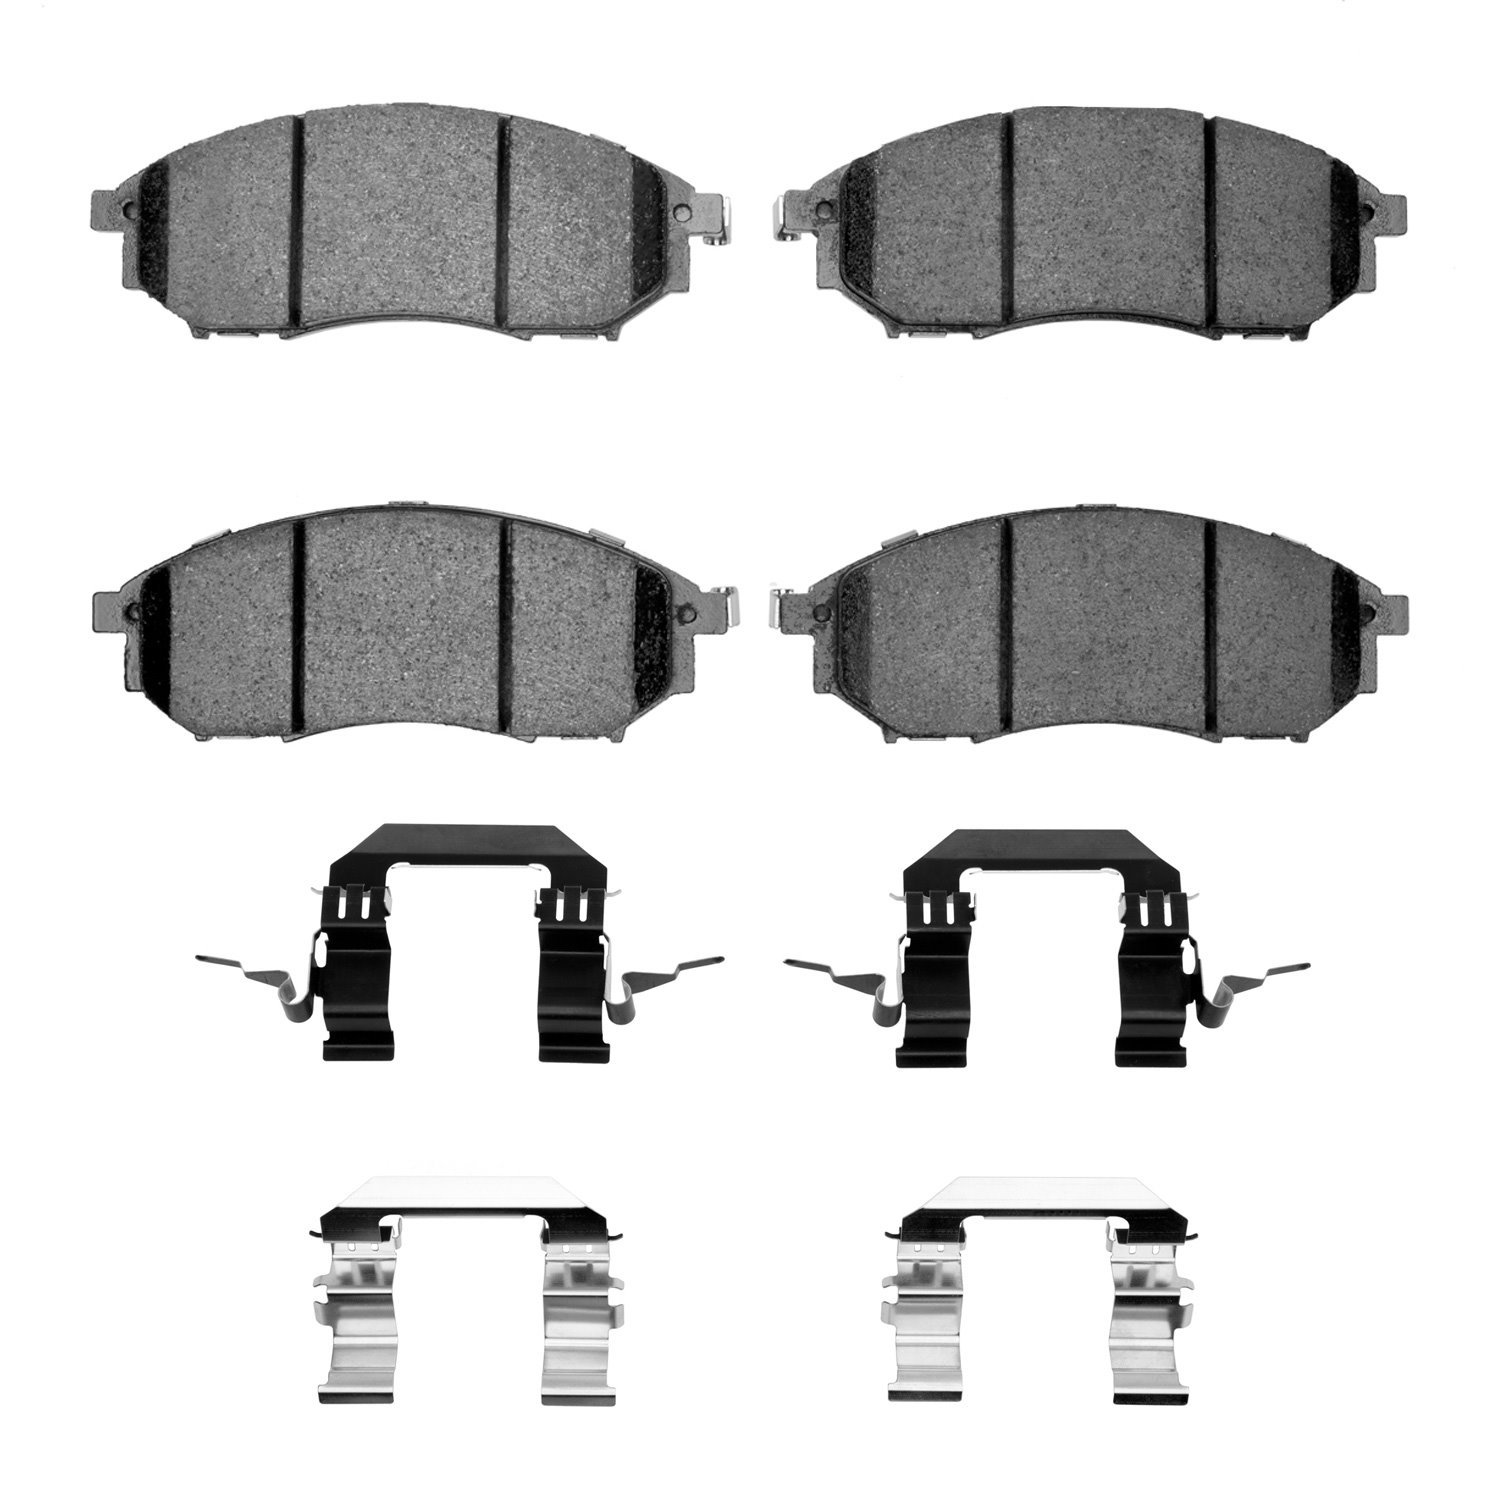 Ceramic Brake Pads & Hardware Kit, 2002-2020 Fits Multiple Makes/Models, Position: Front